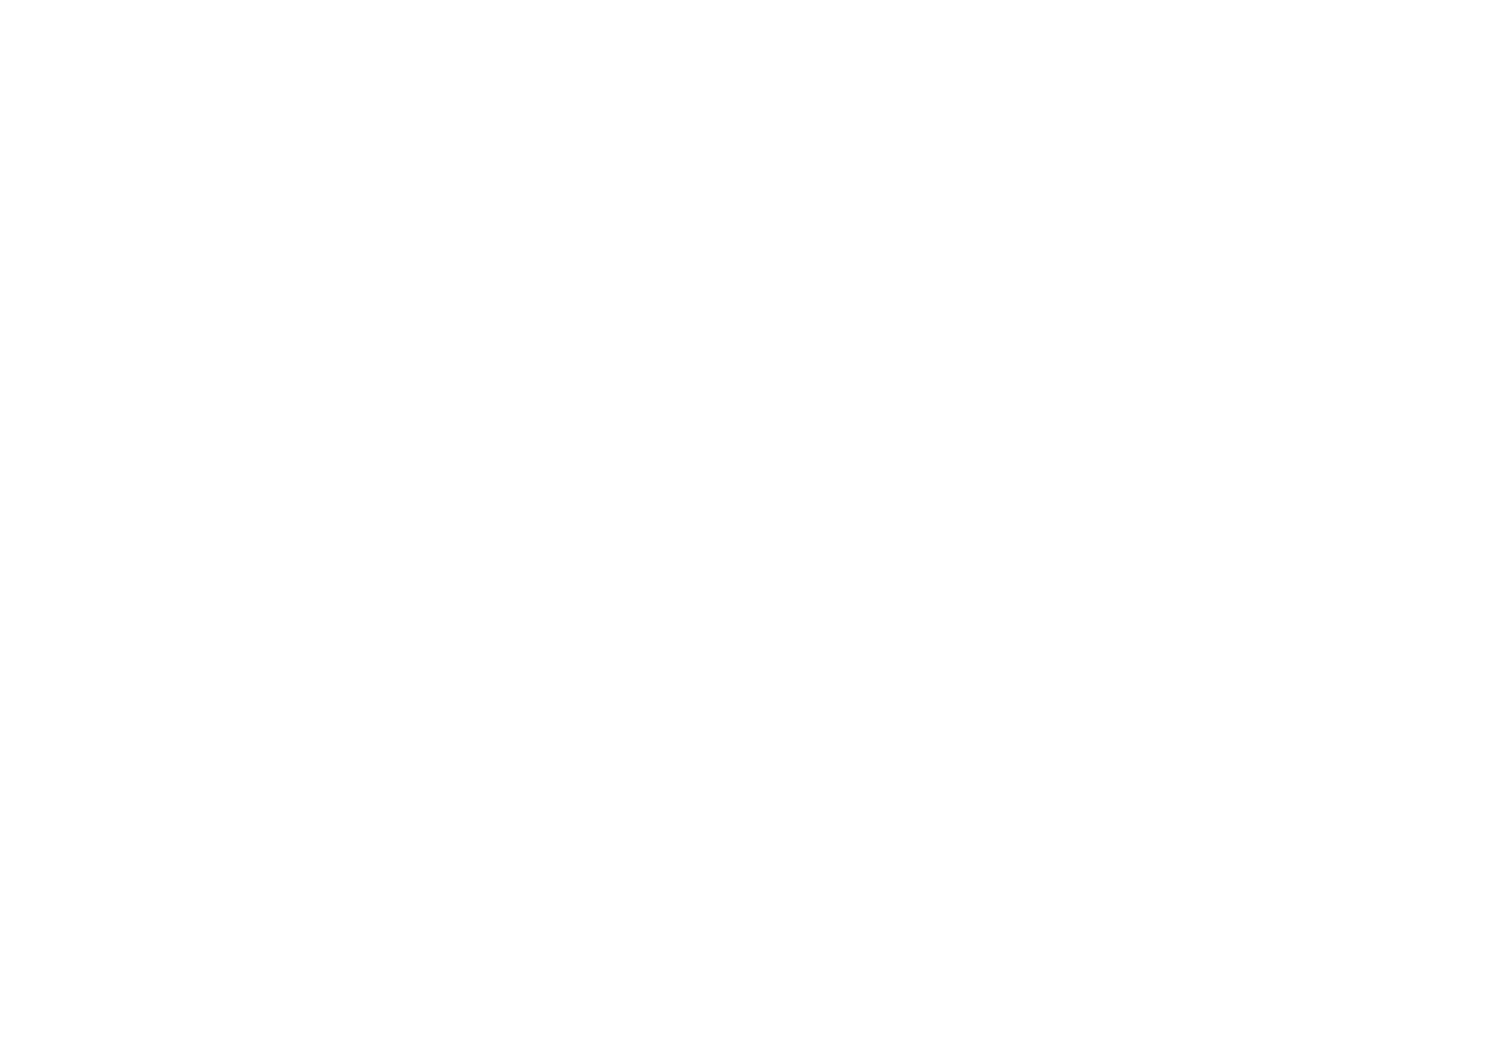 Venus and Vesta